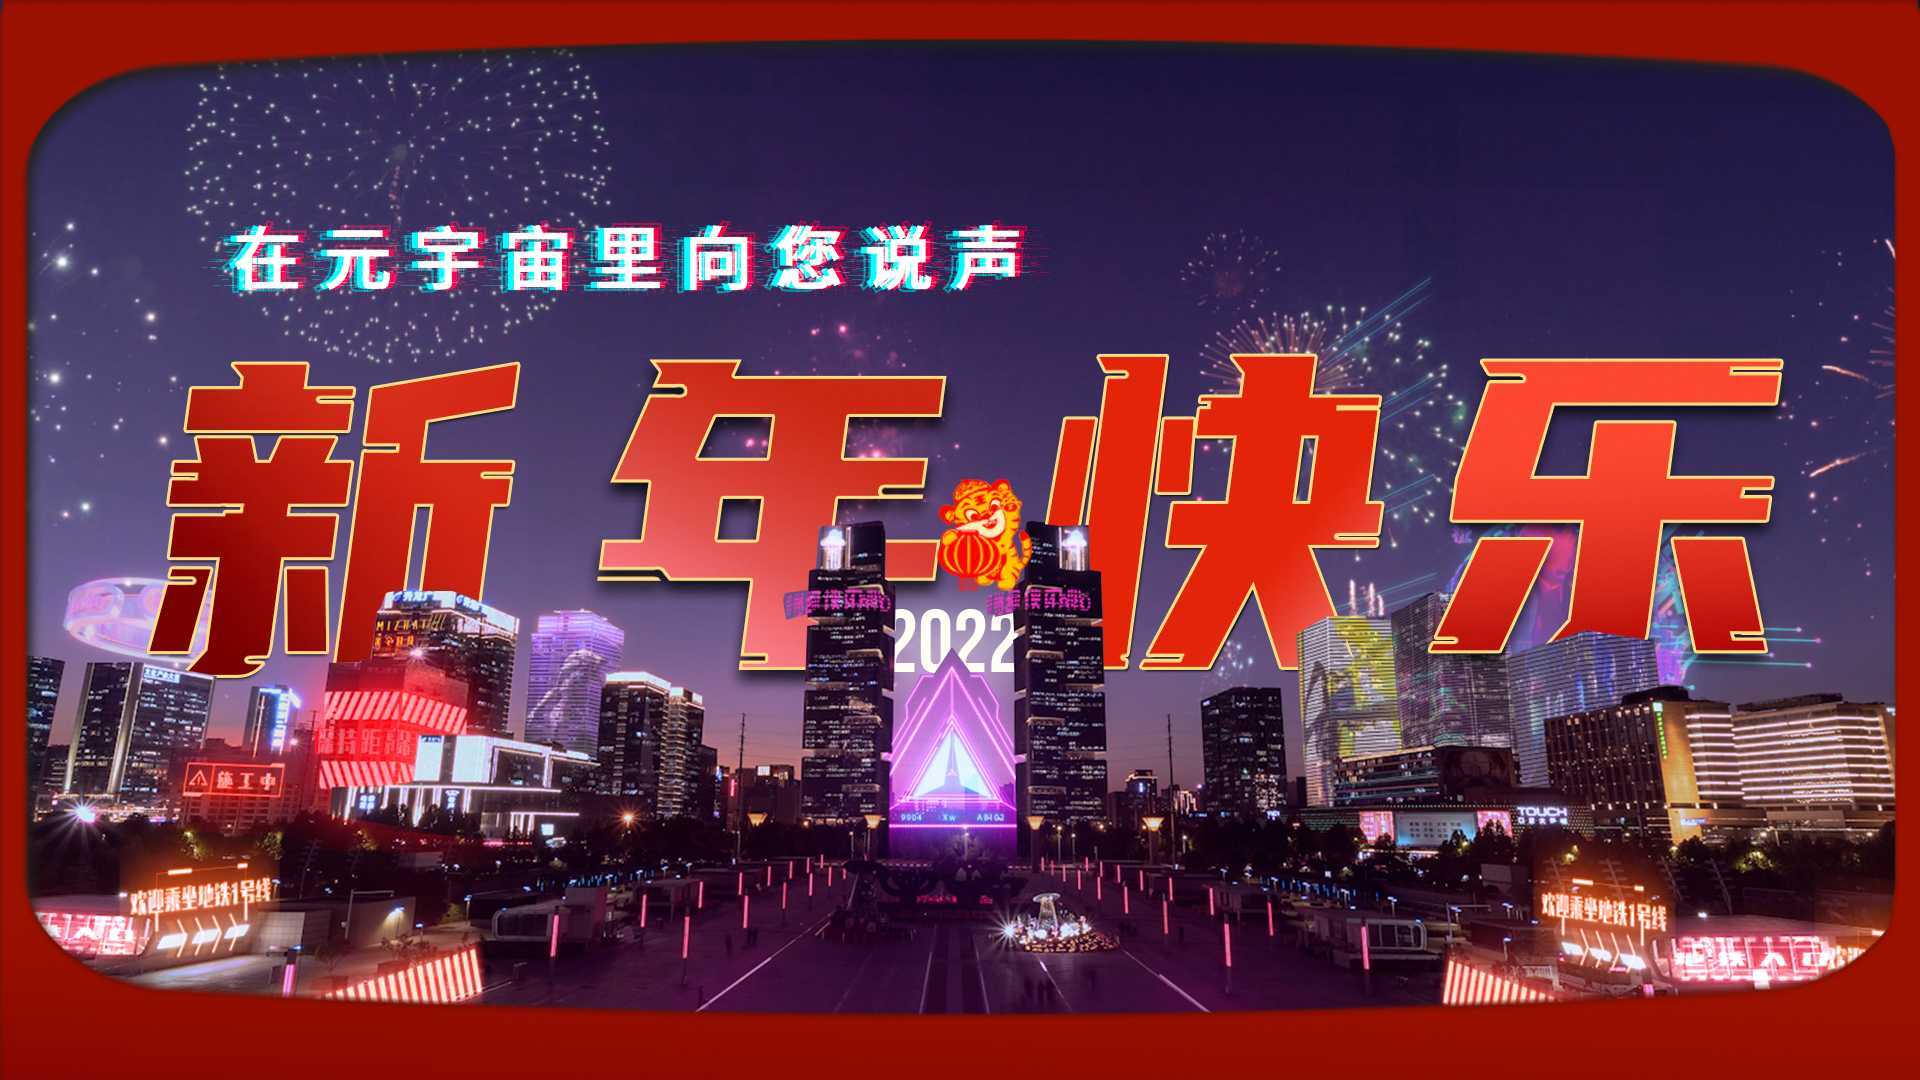 郑州在元宇宙里向您说声，新年快乐！